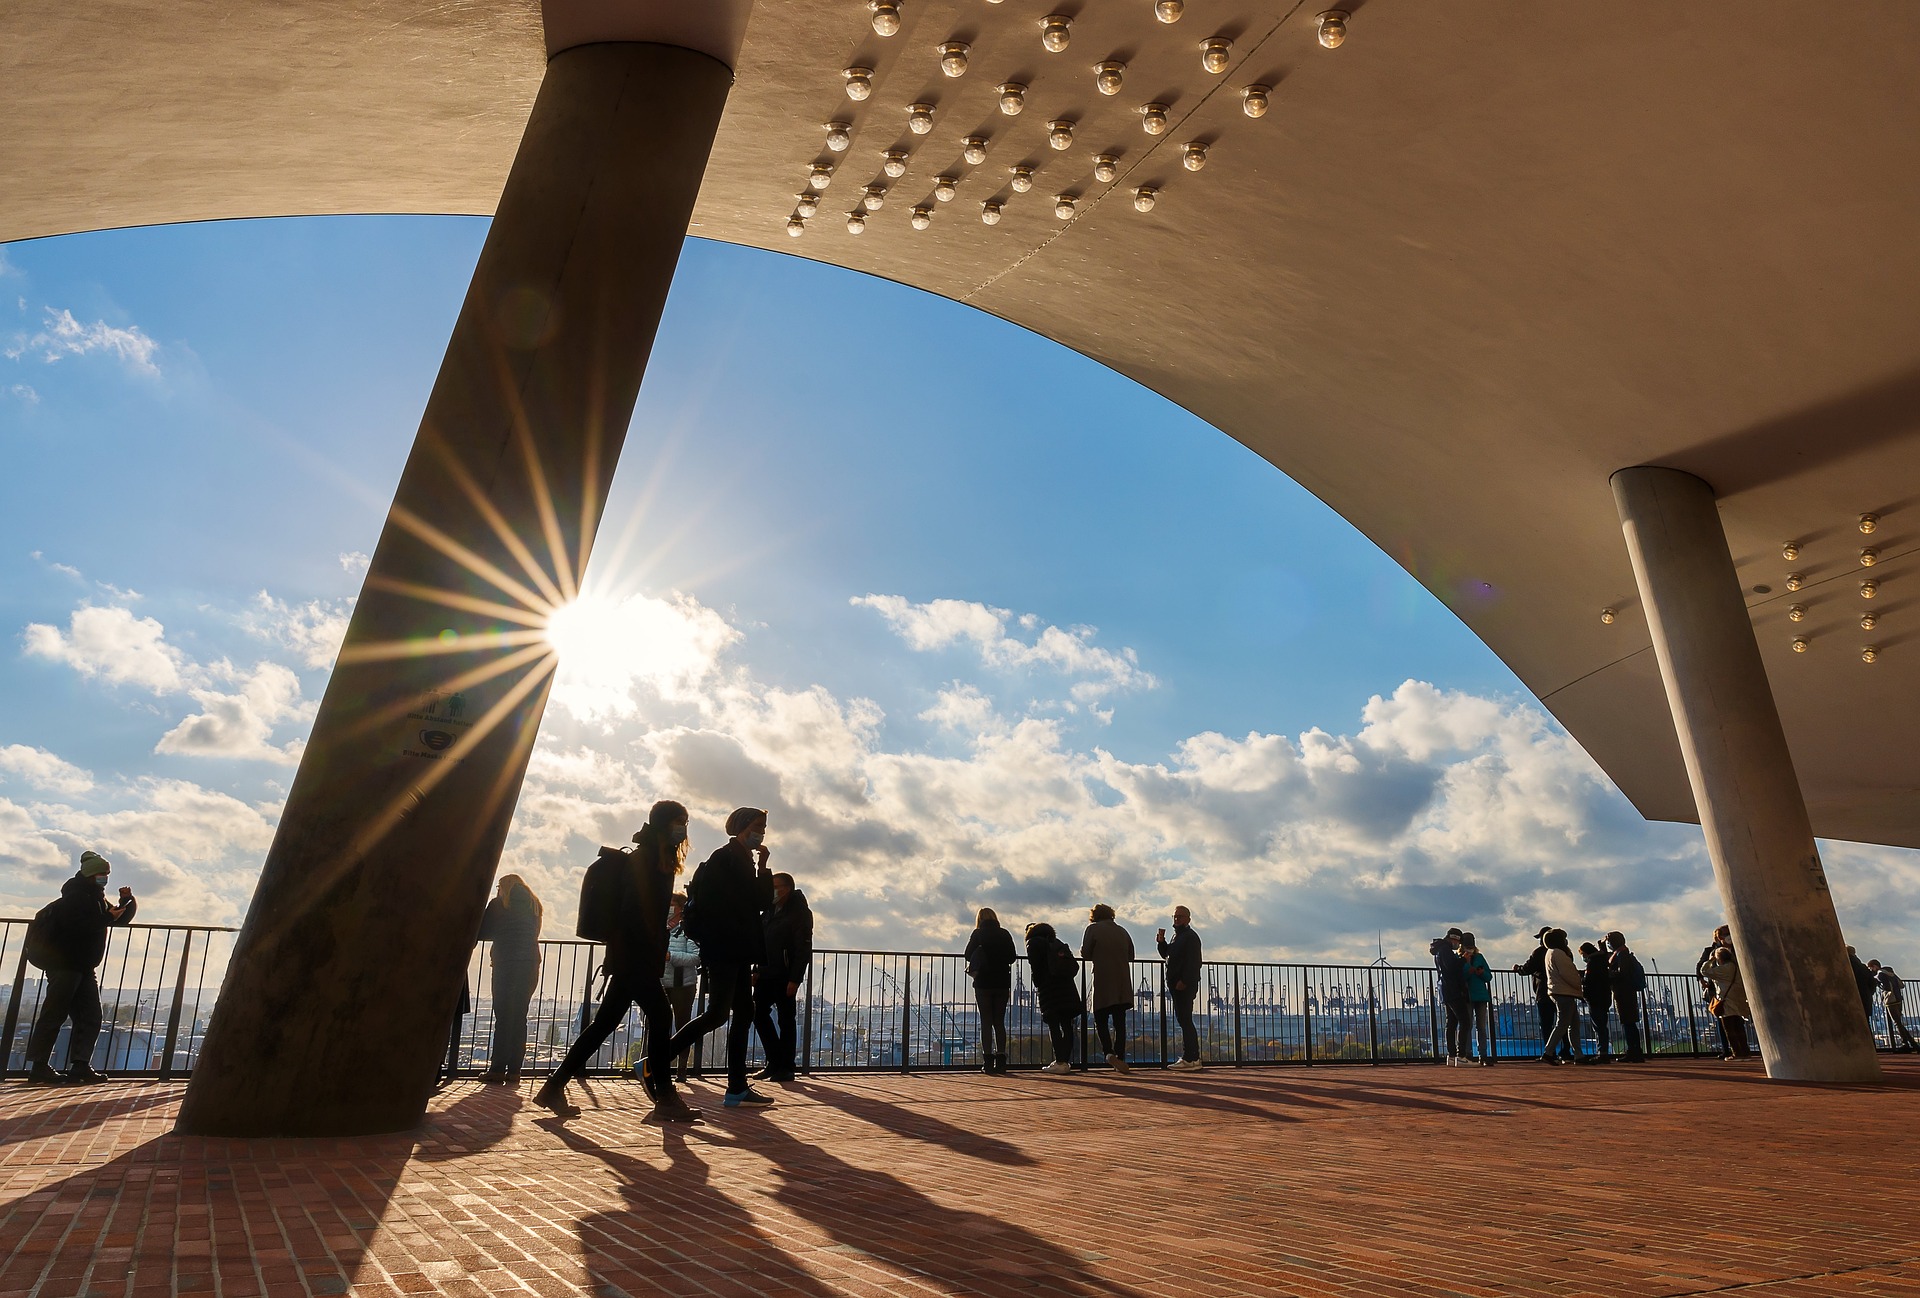 La vista desde la Plaza, el enlace de conexión de la sala de conciertos Elbphilharmonie entre la base y el cuerpo de vidrio, está disponible de forma gratuita.